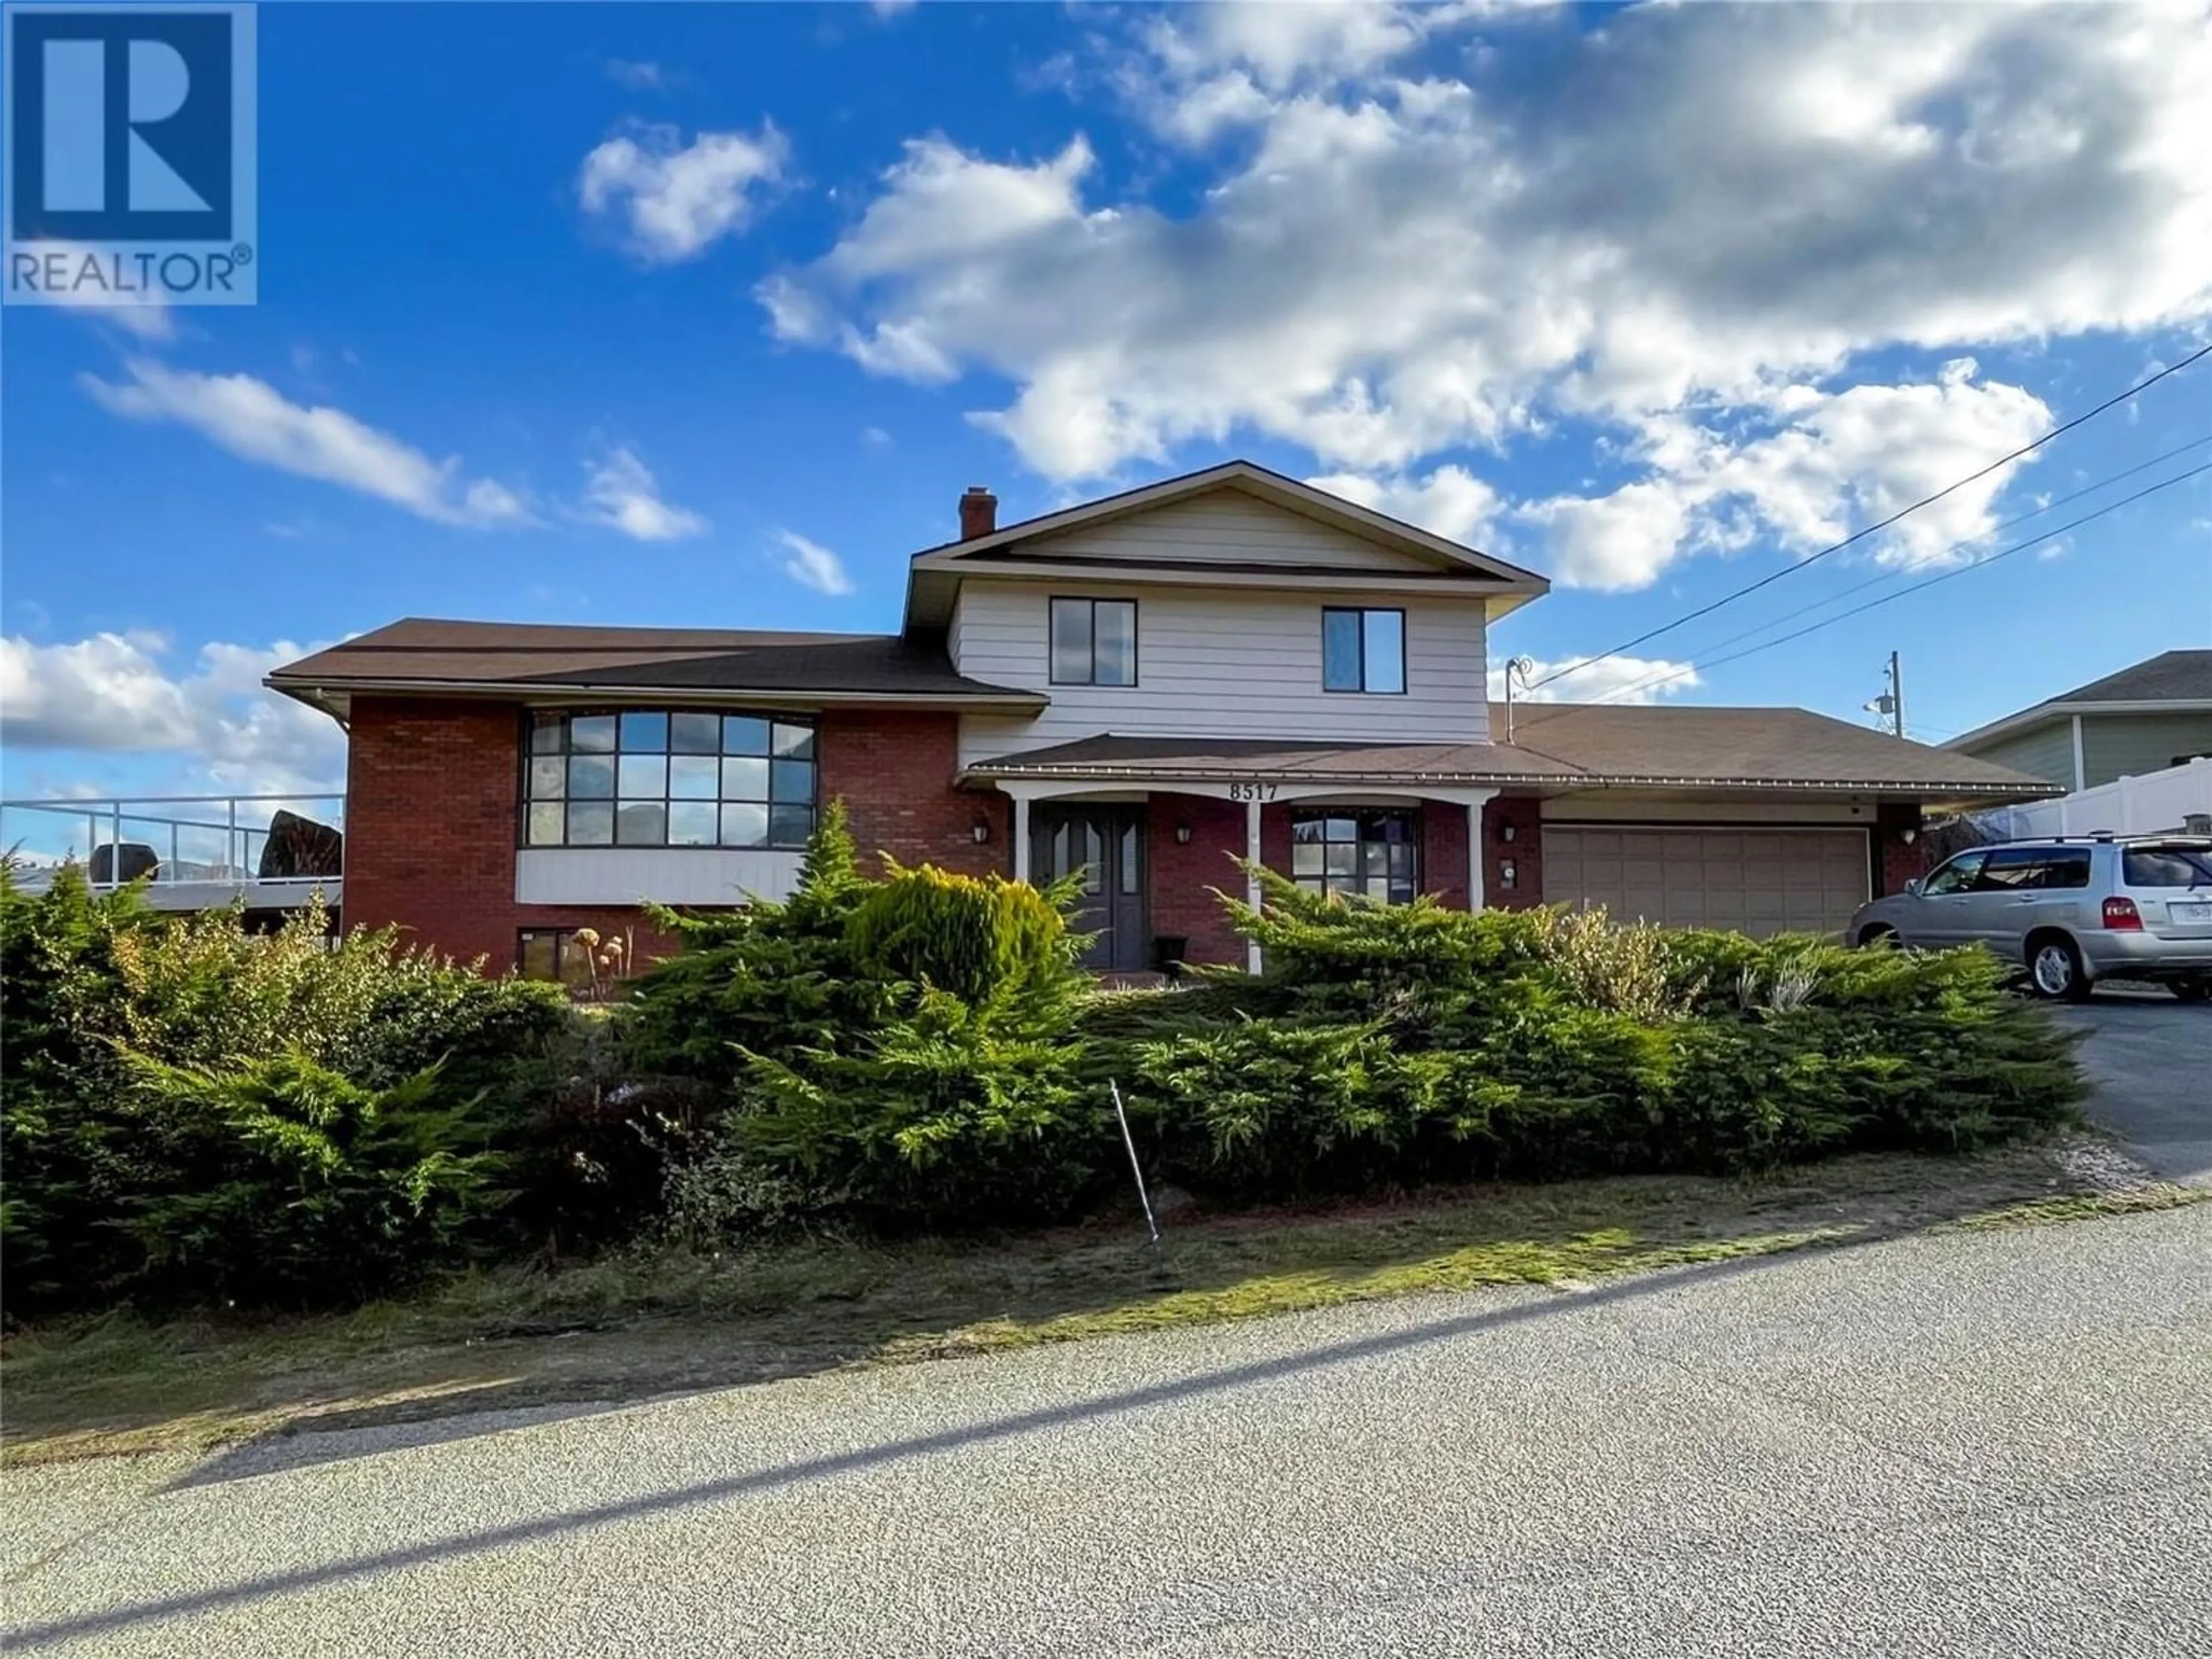 Frontside or backside of a home for 8517 PRIMROSE Lane, Osoyoos British Columbia V0H1V0